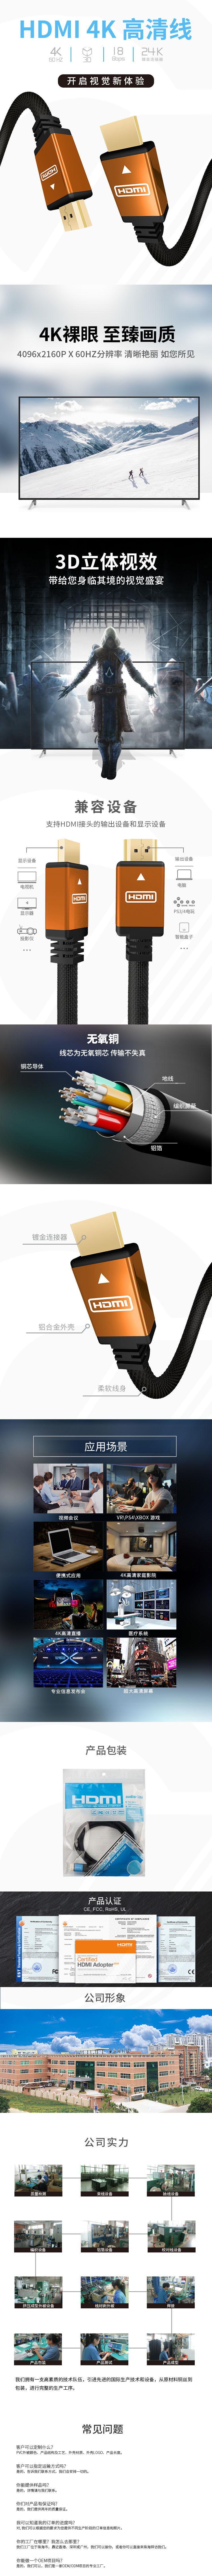 橙色铝壳 HDMI 2.0中文.jpg